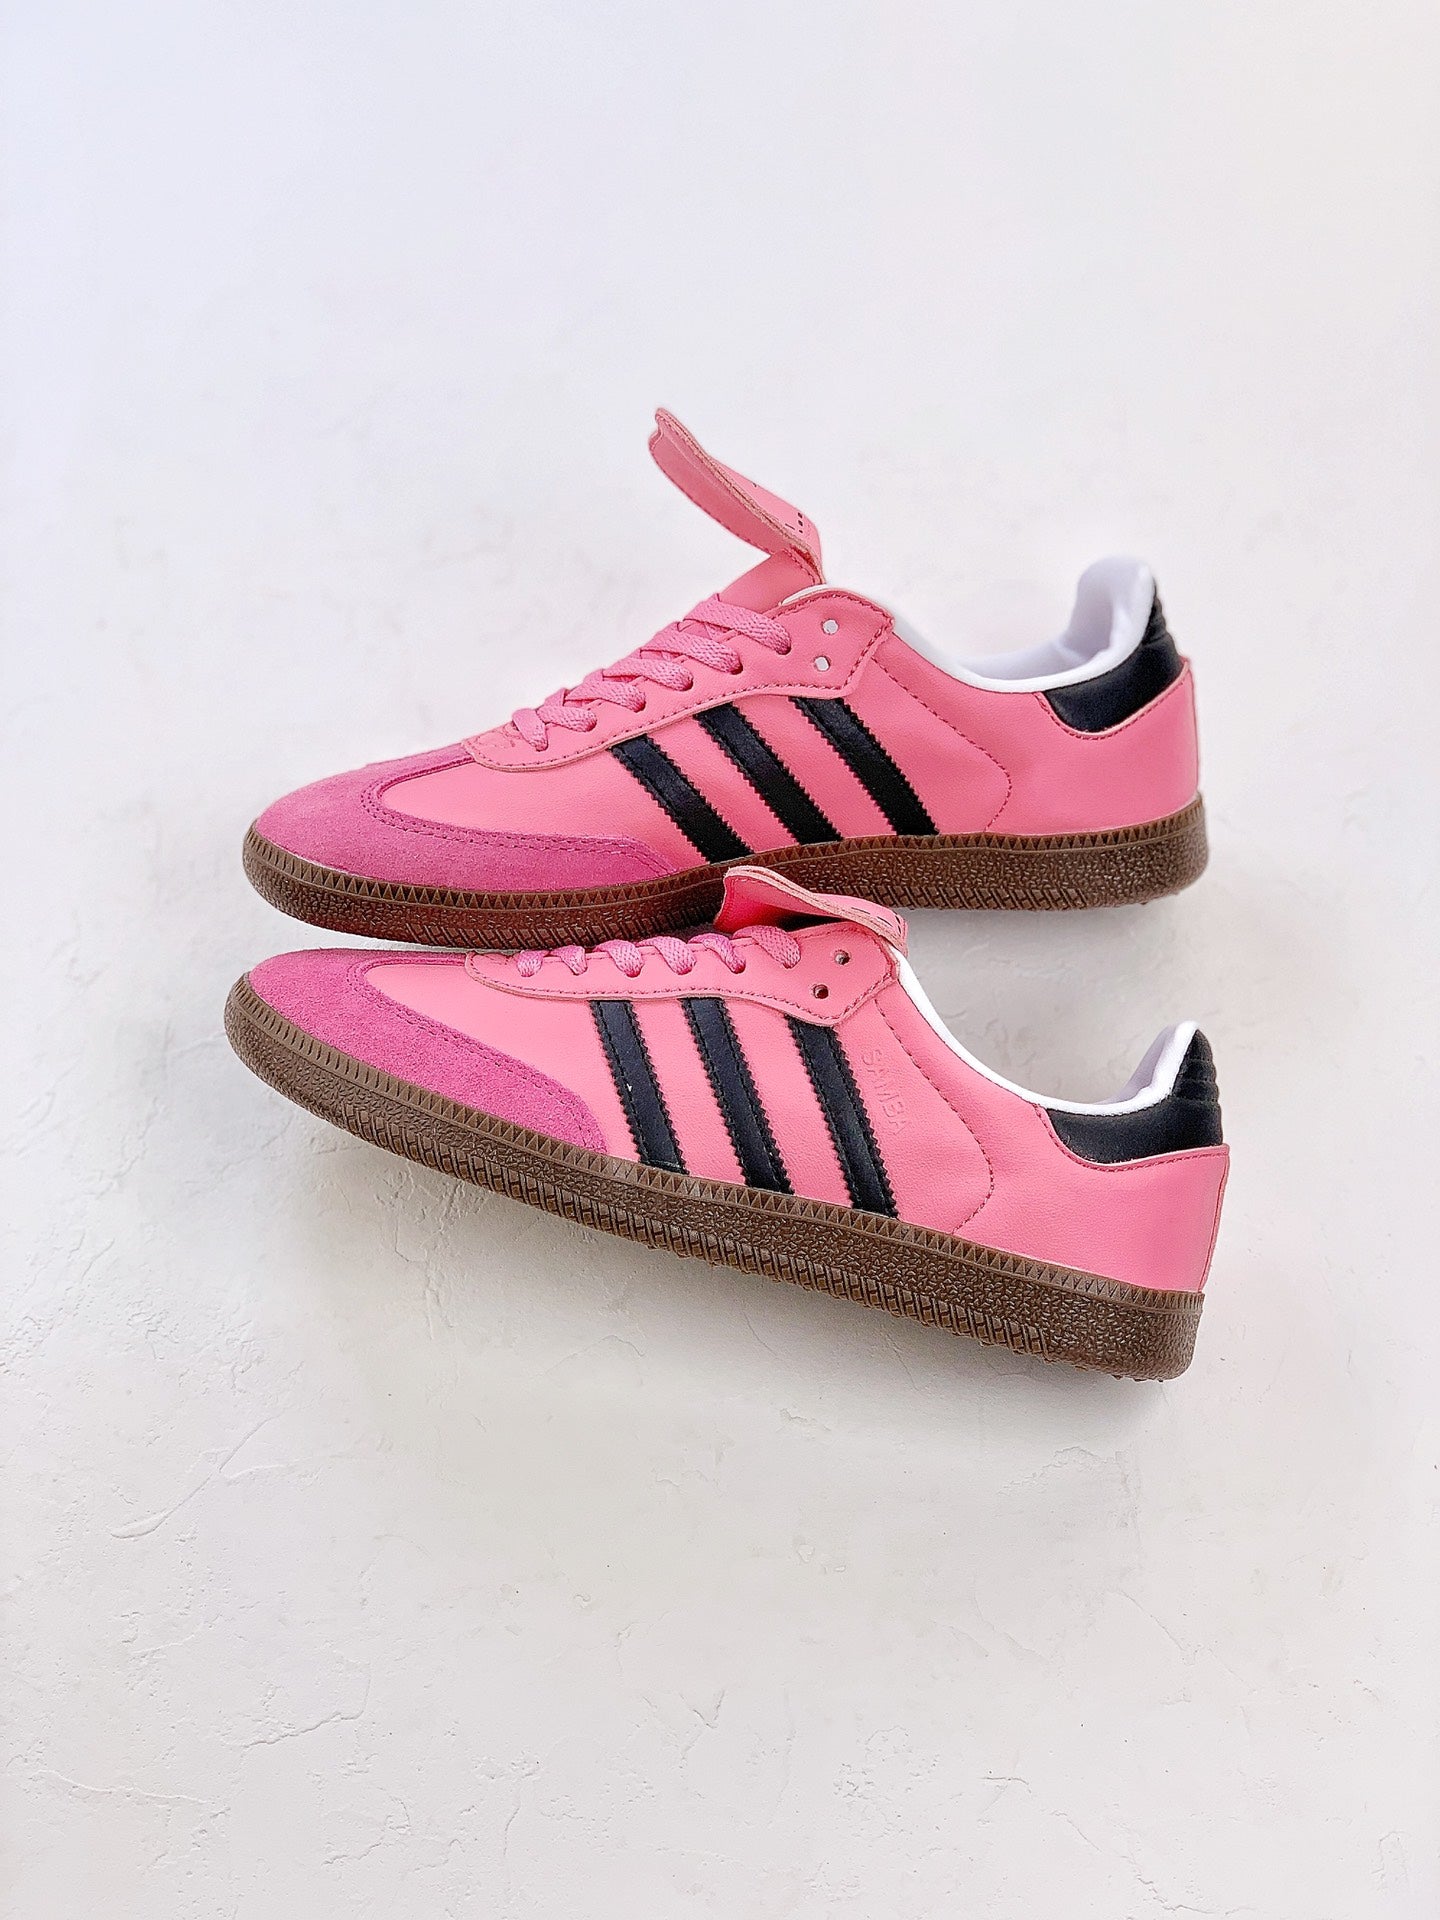 Adidas samba hot pink shoes